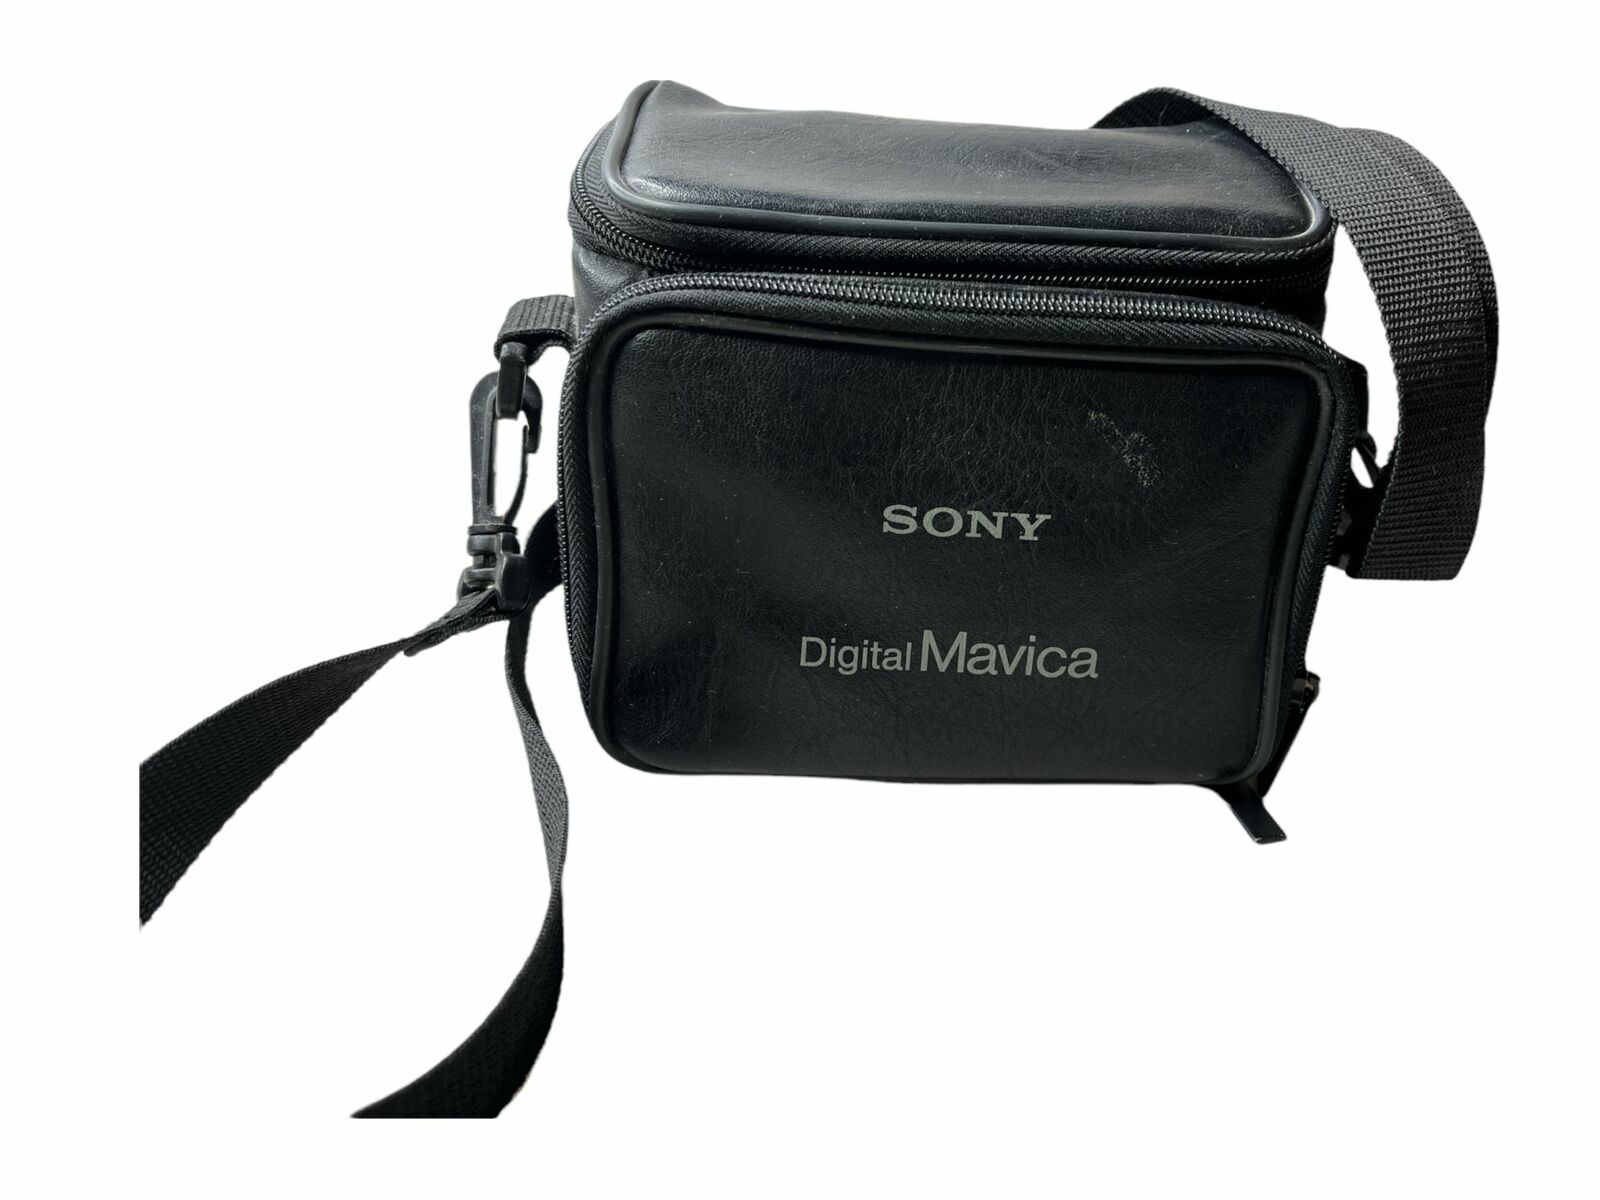 Wijzer hoofdkussen Zeep Sony FD Mavica Interpolated 1.6 Megapixel Images Digital Camera With Bag  and Bat | eBay